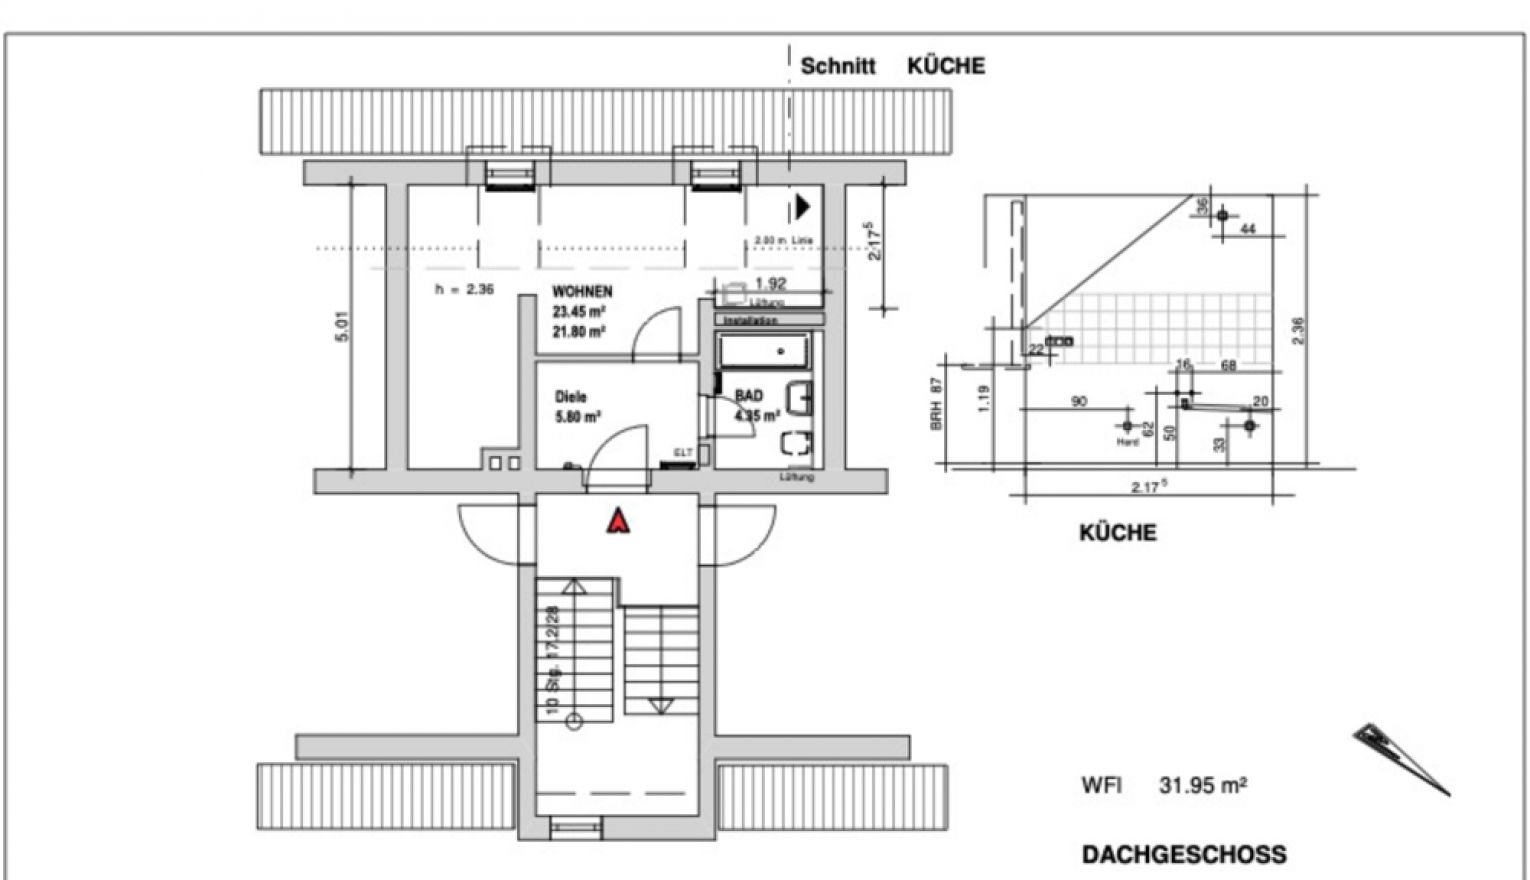 Mietwohnung • 1 Raumwohnung • Einbauküche • offenes Wohnzimmer • Schloßchemnitz • im Dachgeschoss